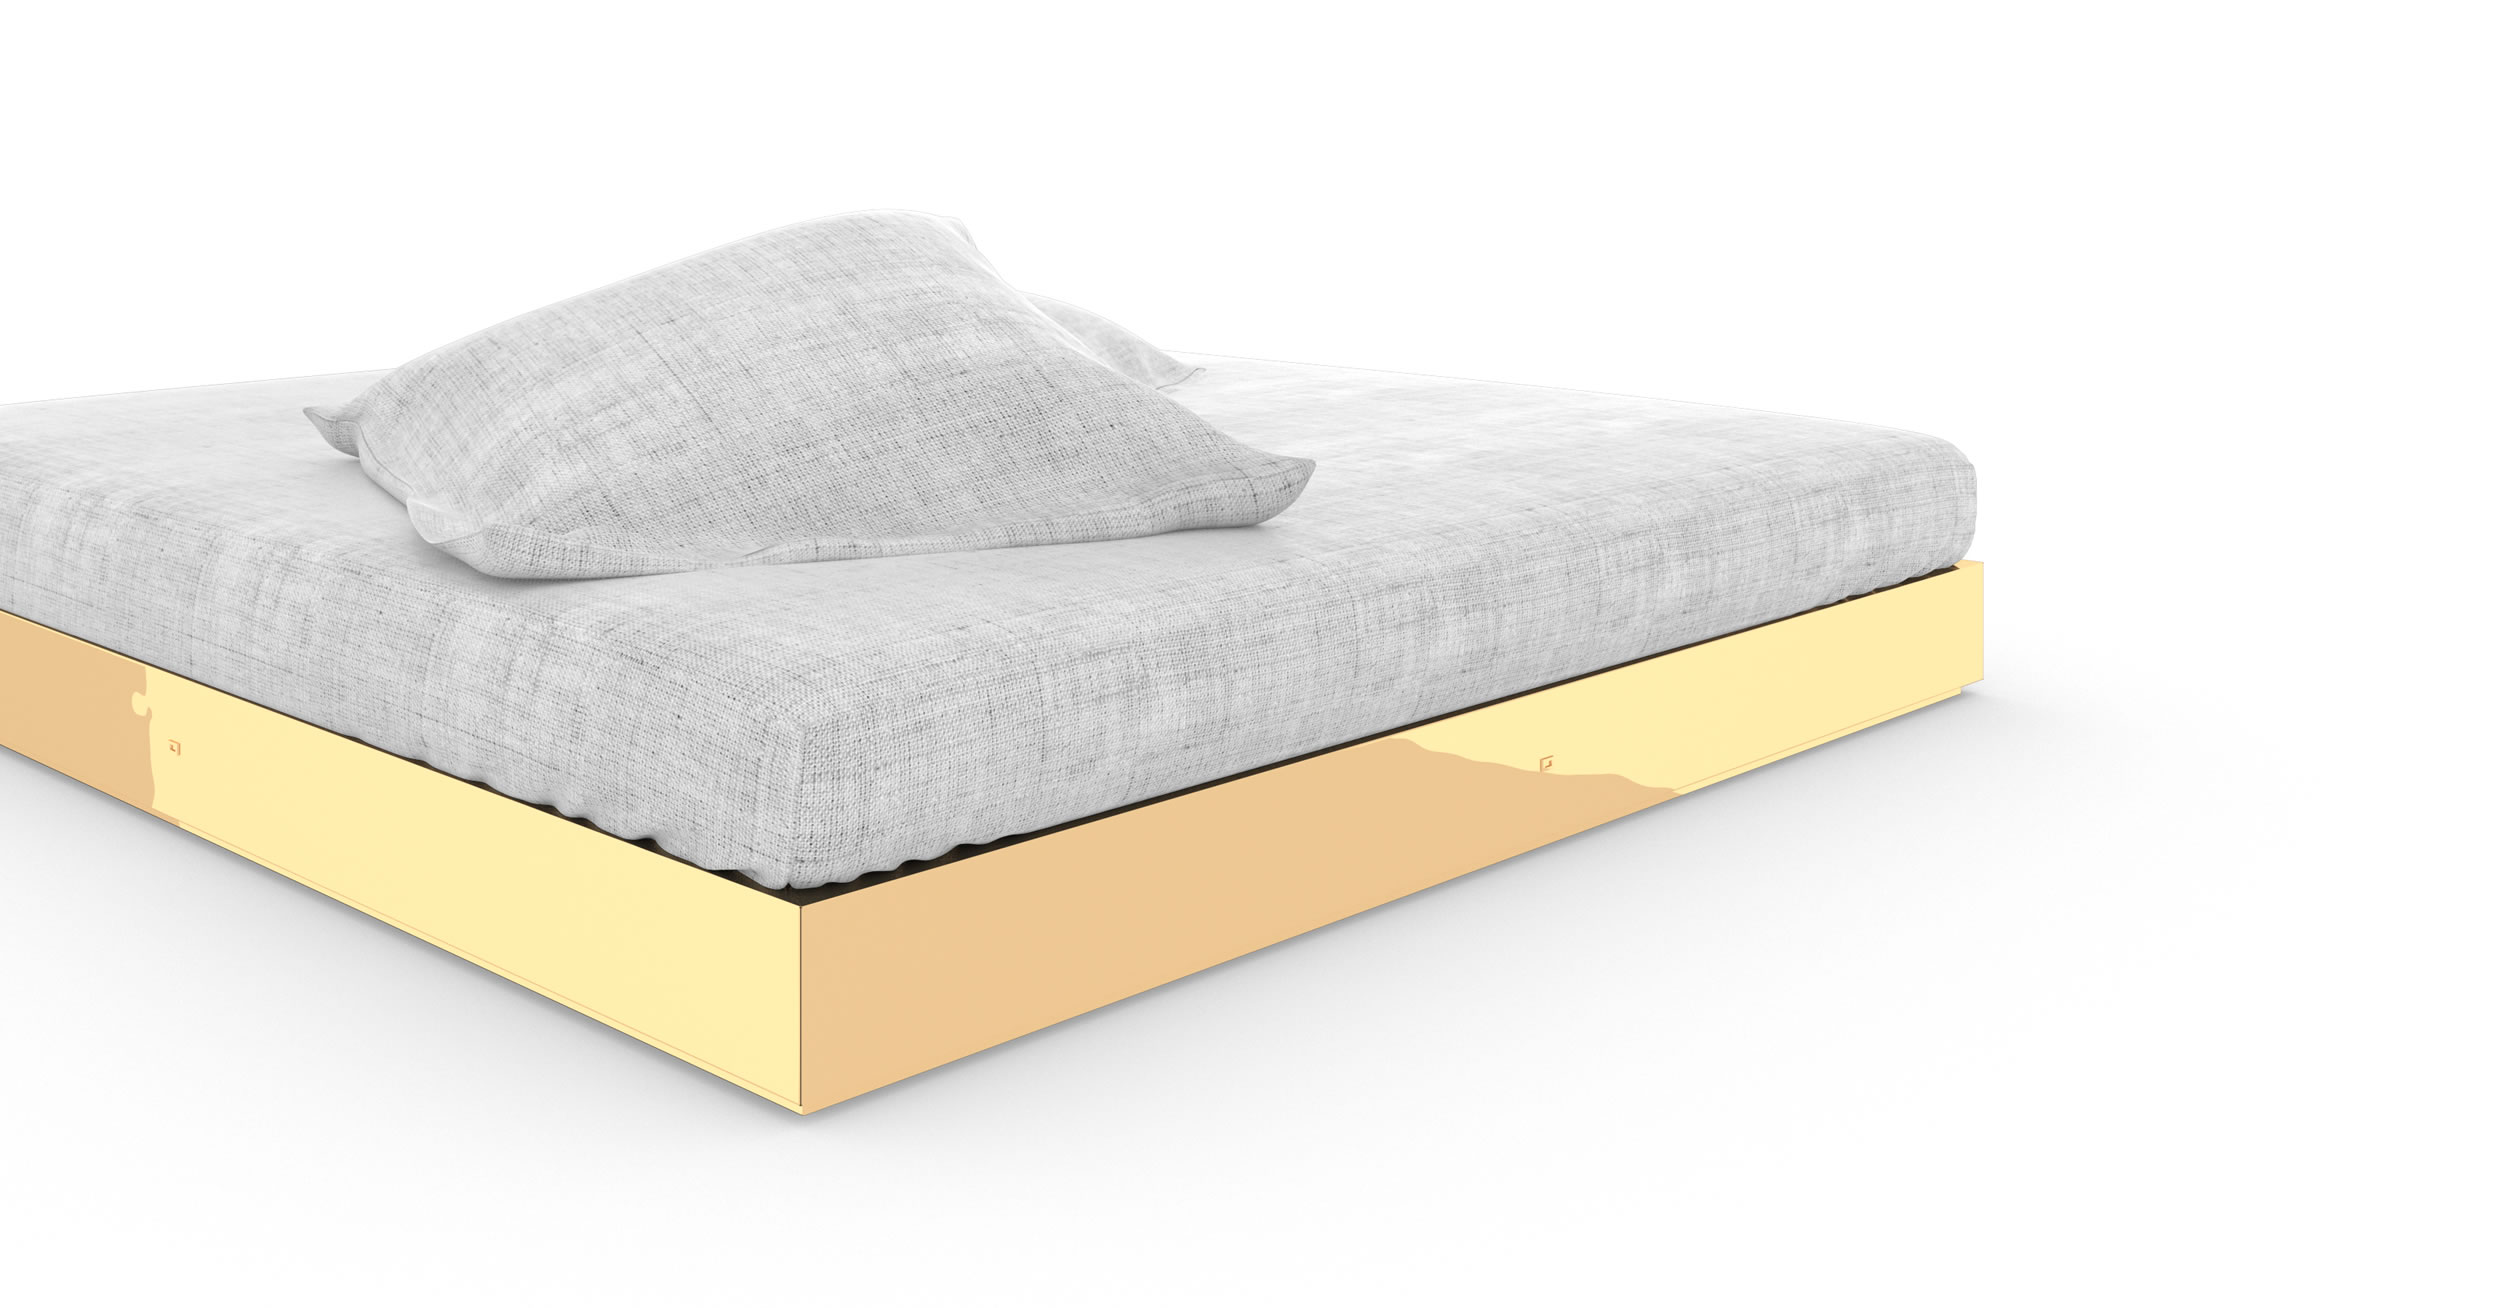 Design Bett Luxus Gold Massgefertigt Kunstwerk Exklusiv Puristisch Elegant InteriorFELIX SCHWAKE